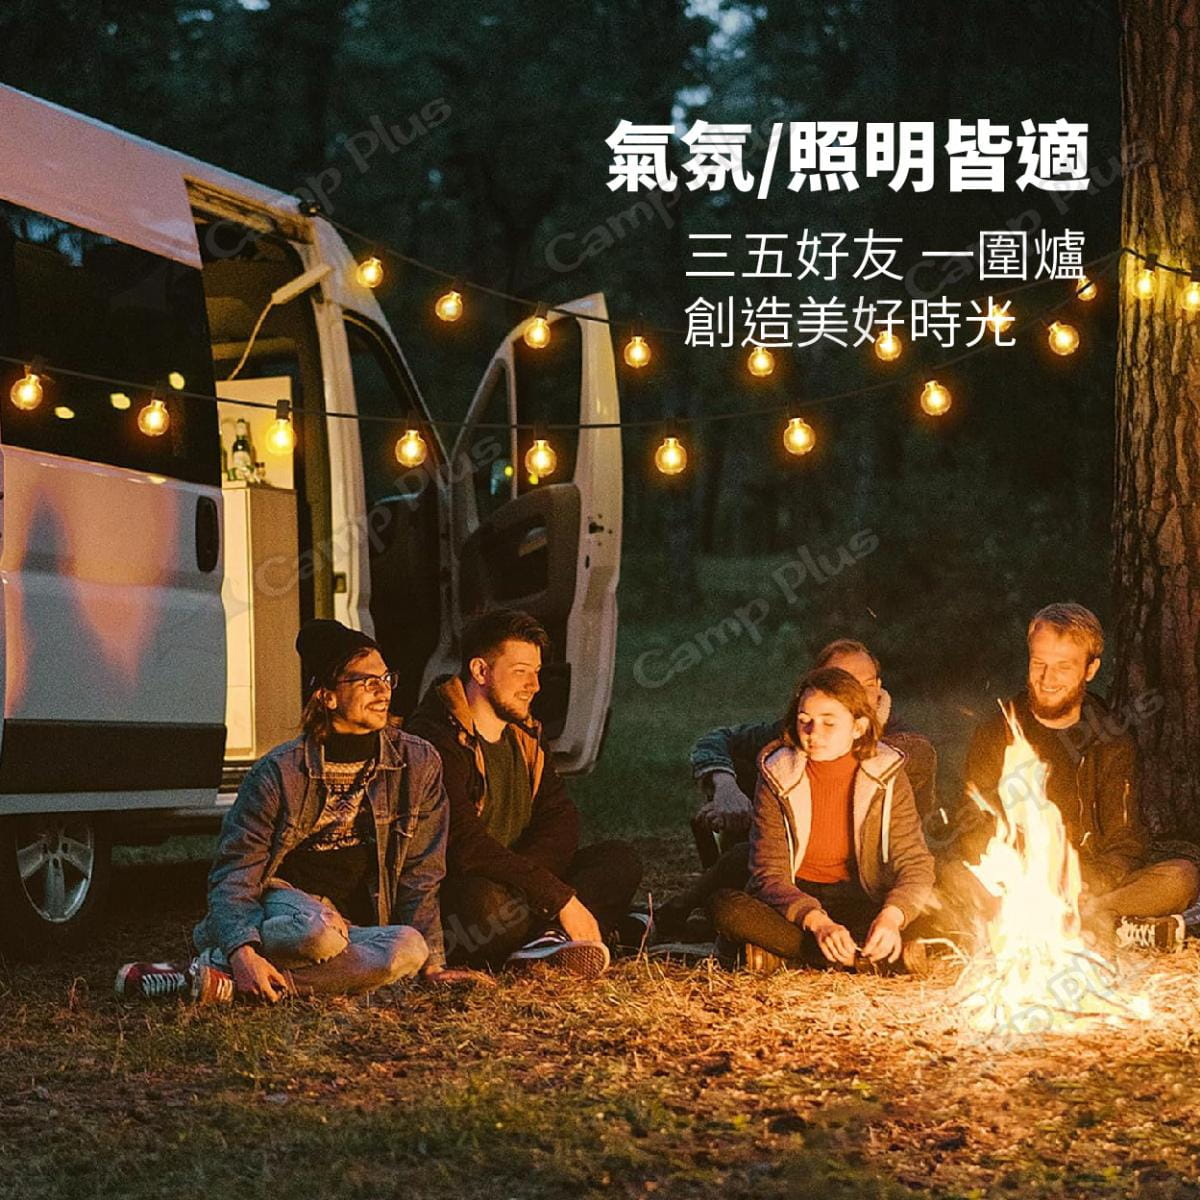 【Camp Plus】G40 愛迪生串燈 霧白暖黃/透明暖黃 悠遊戶外 8